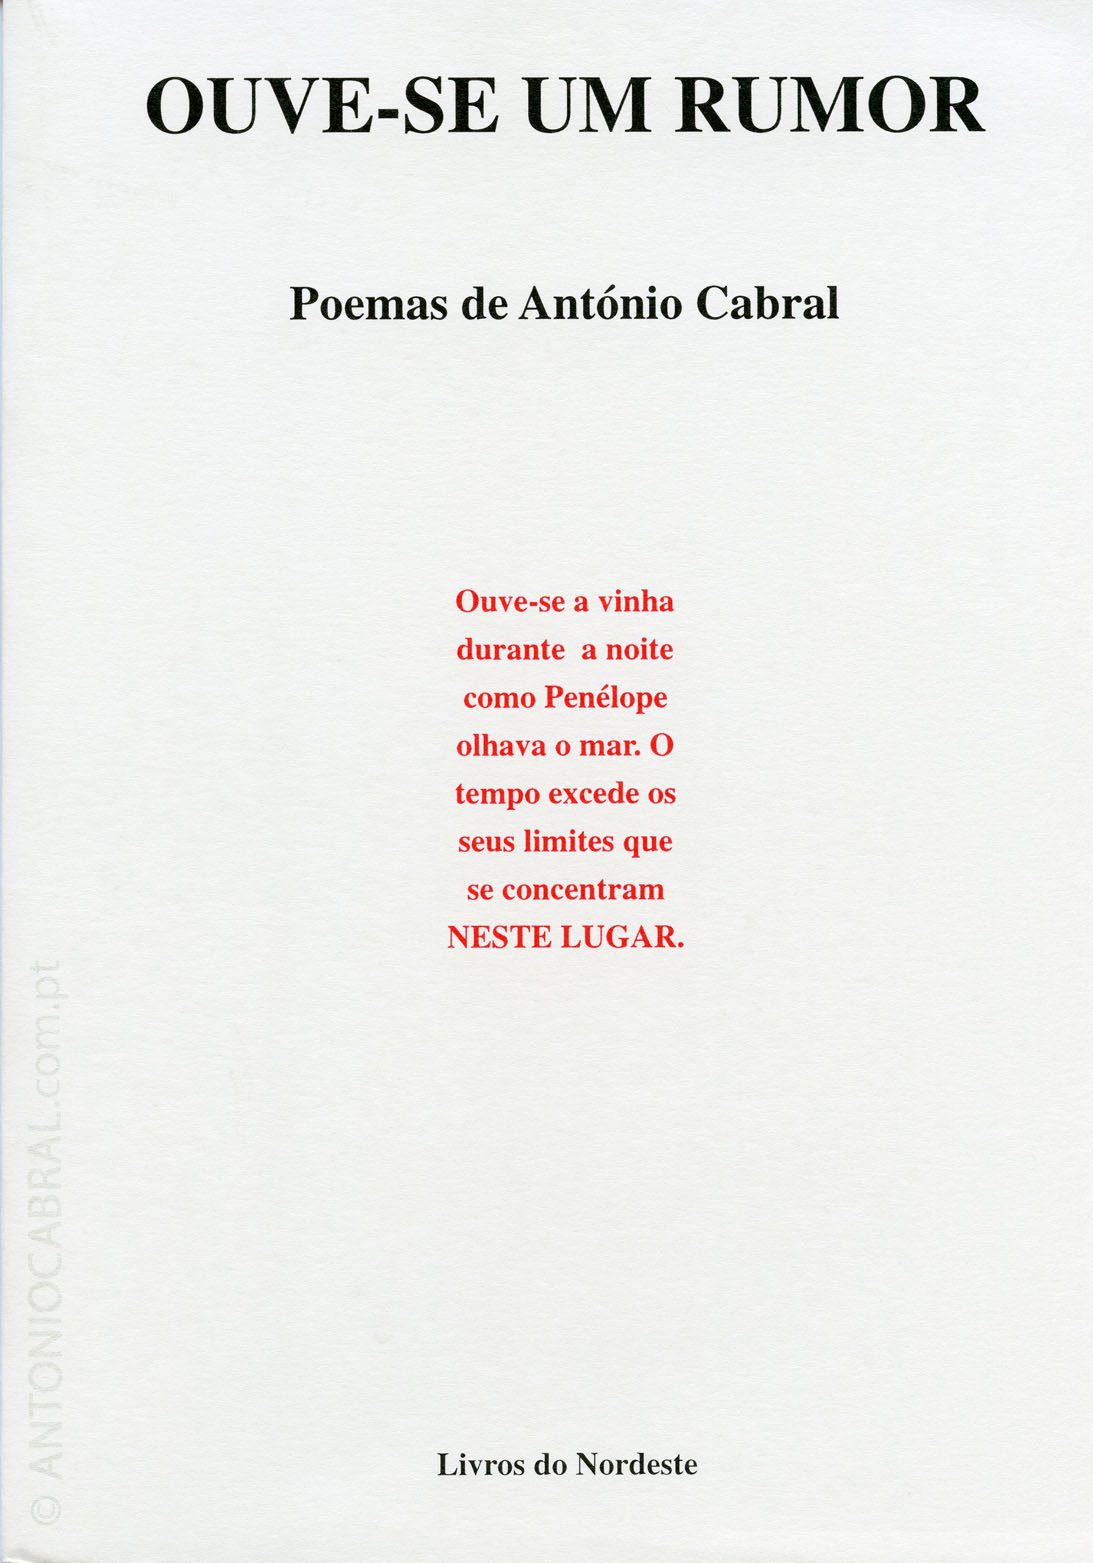 CINZA DOS OSSOS * Poesia * Antonio Cabral Filho  - Calaméo